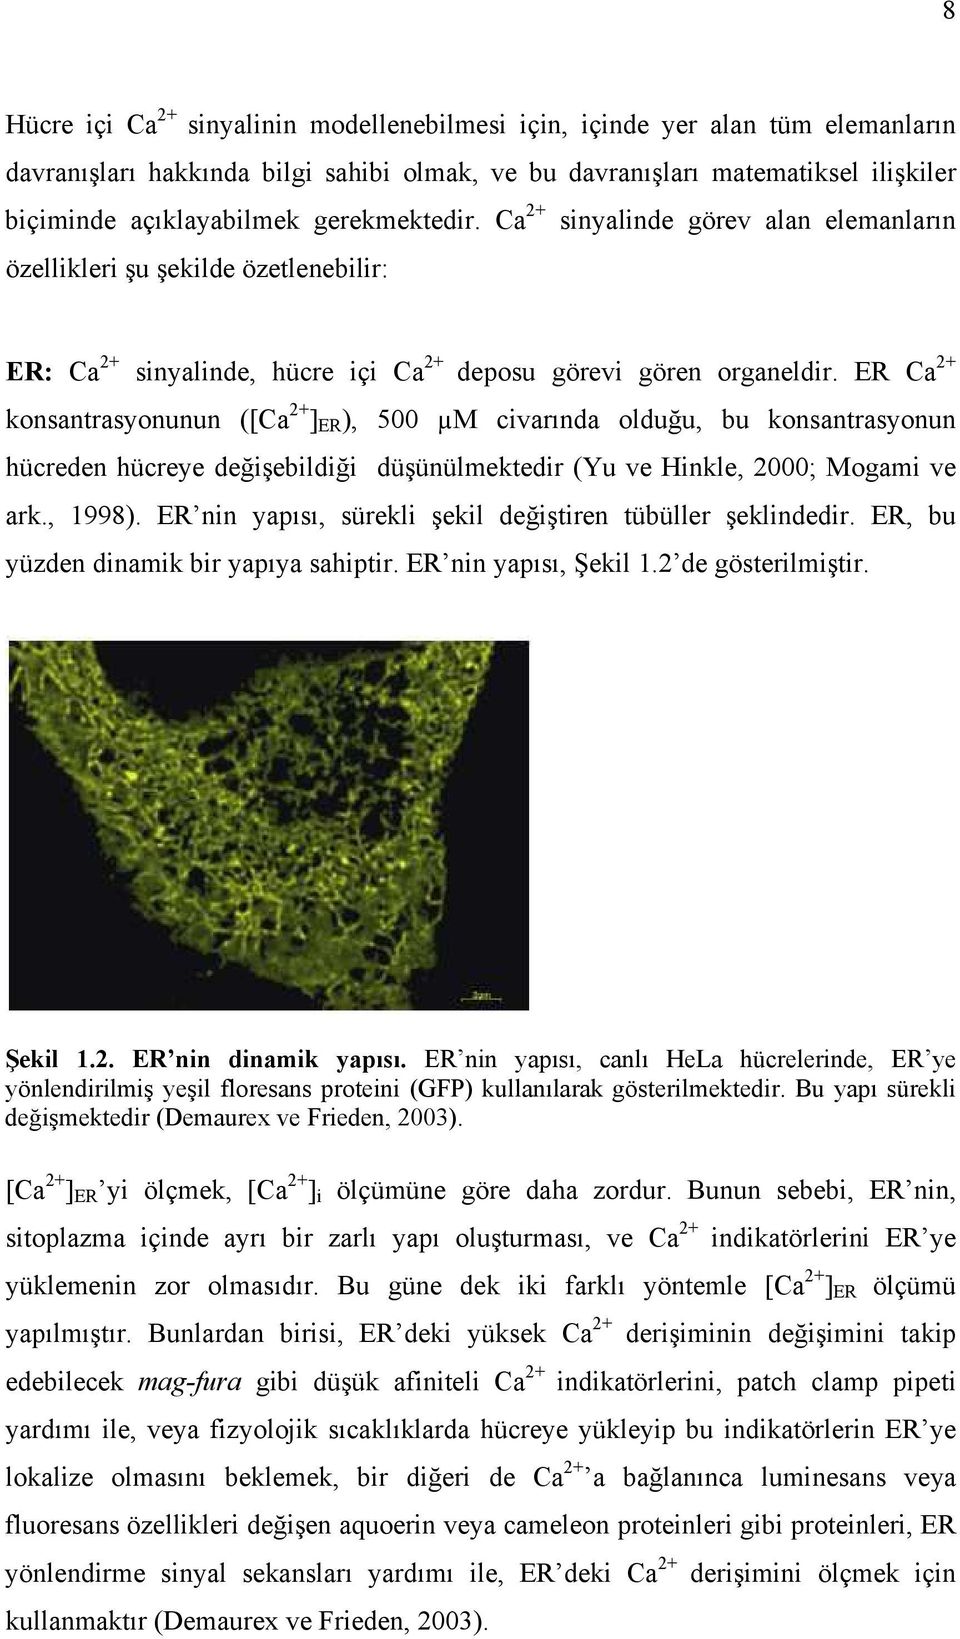 ER Ca 2+ konsantrasyonunun ([Ca 2+ ] ER ), 500 M civarında olduğu, bu konsantrasyonun hücreden hücreye değişebildiği düşünülmektedir (Yu ve Hinkle, 2000; Mogami ve ark., 1998).